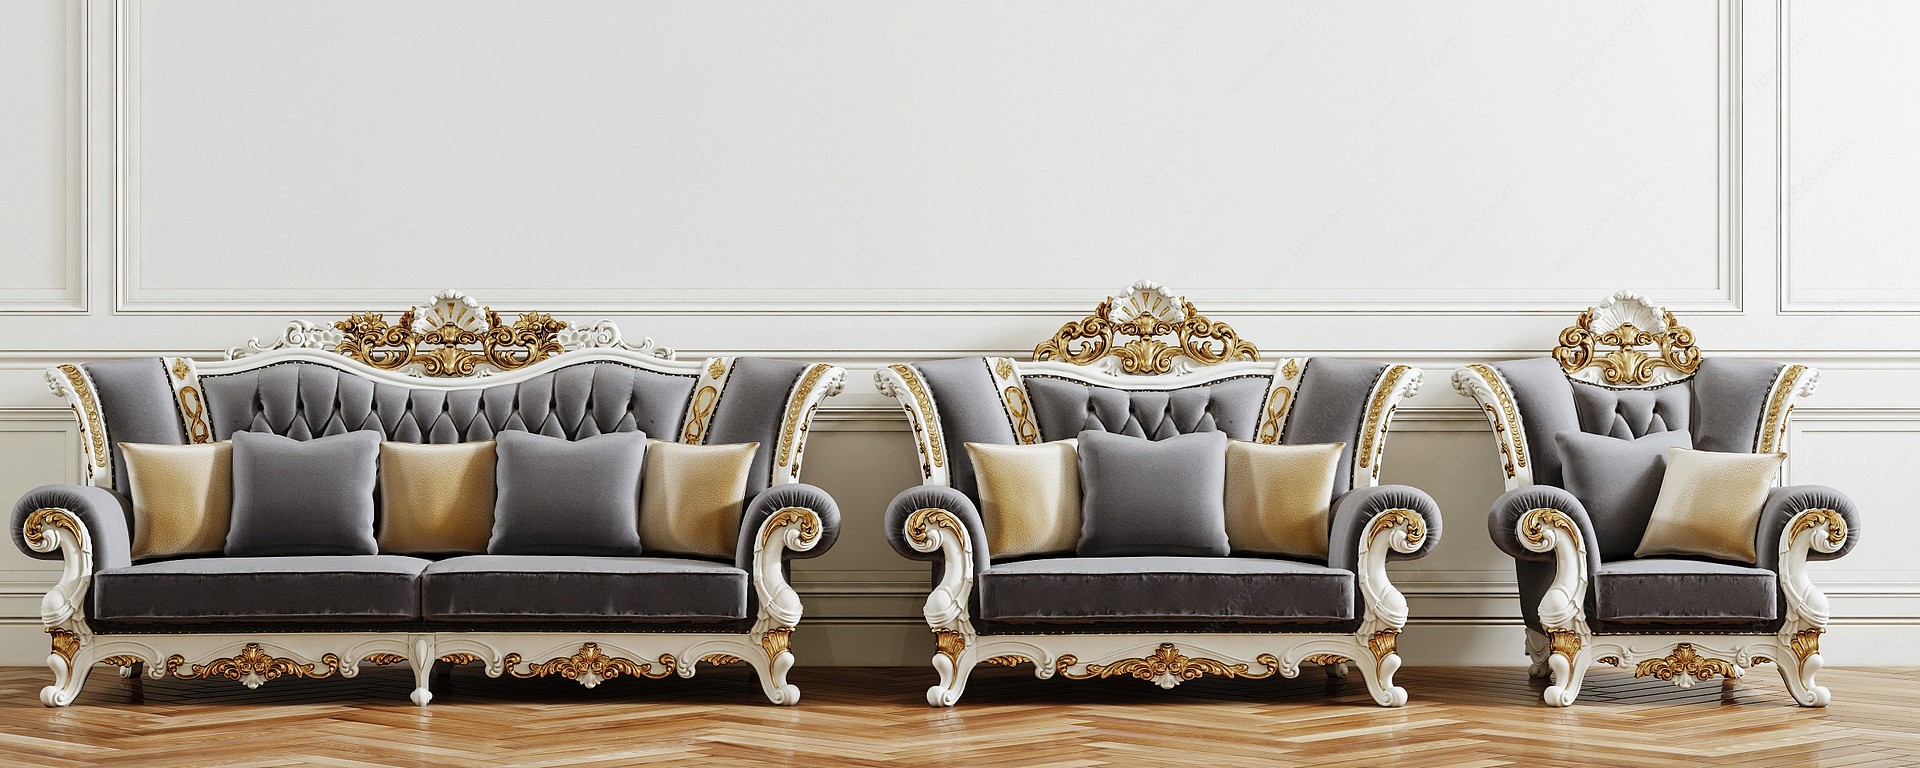 法式沙发组合3D模型